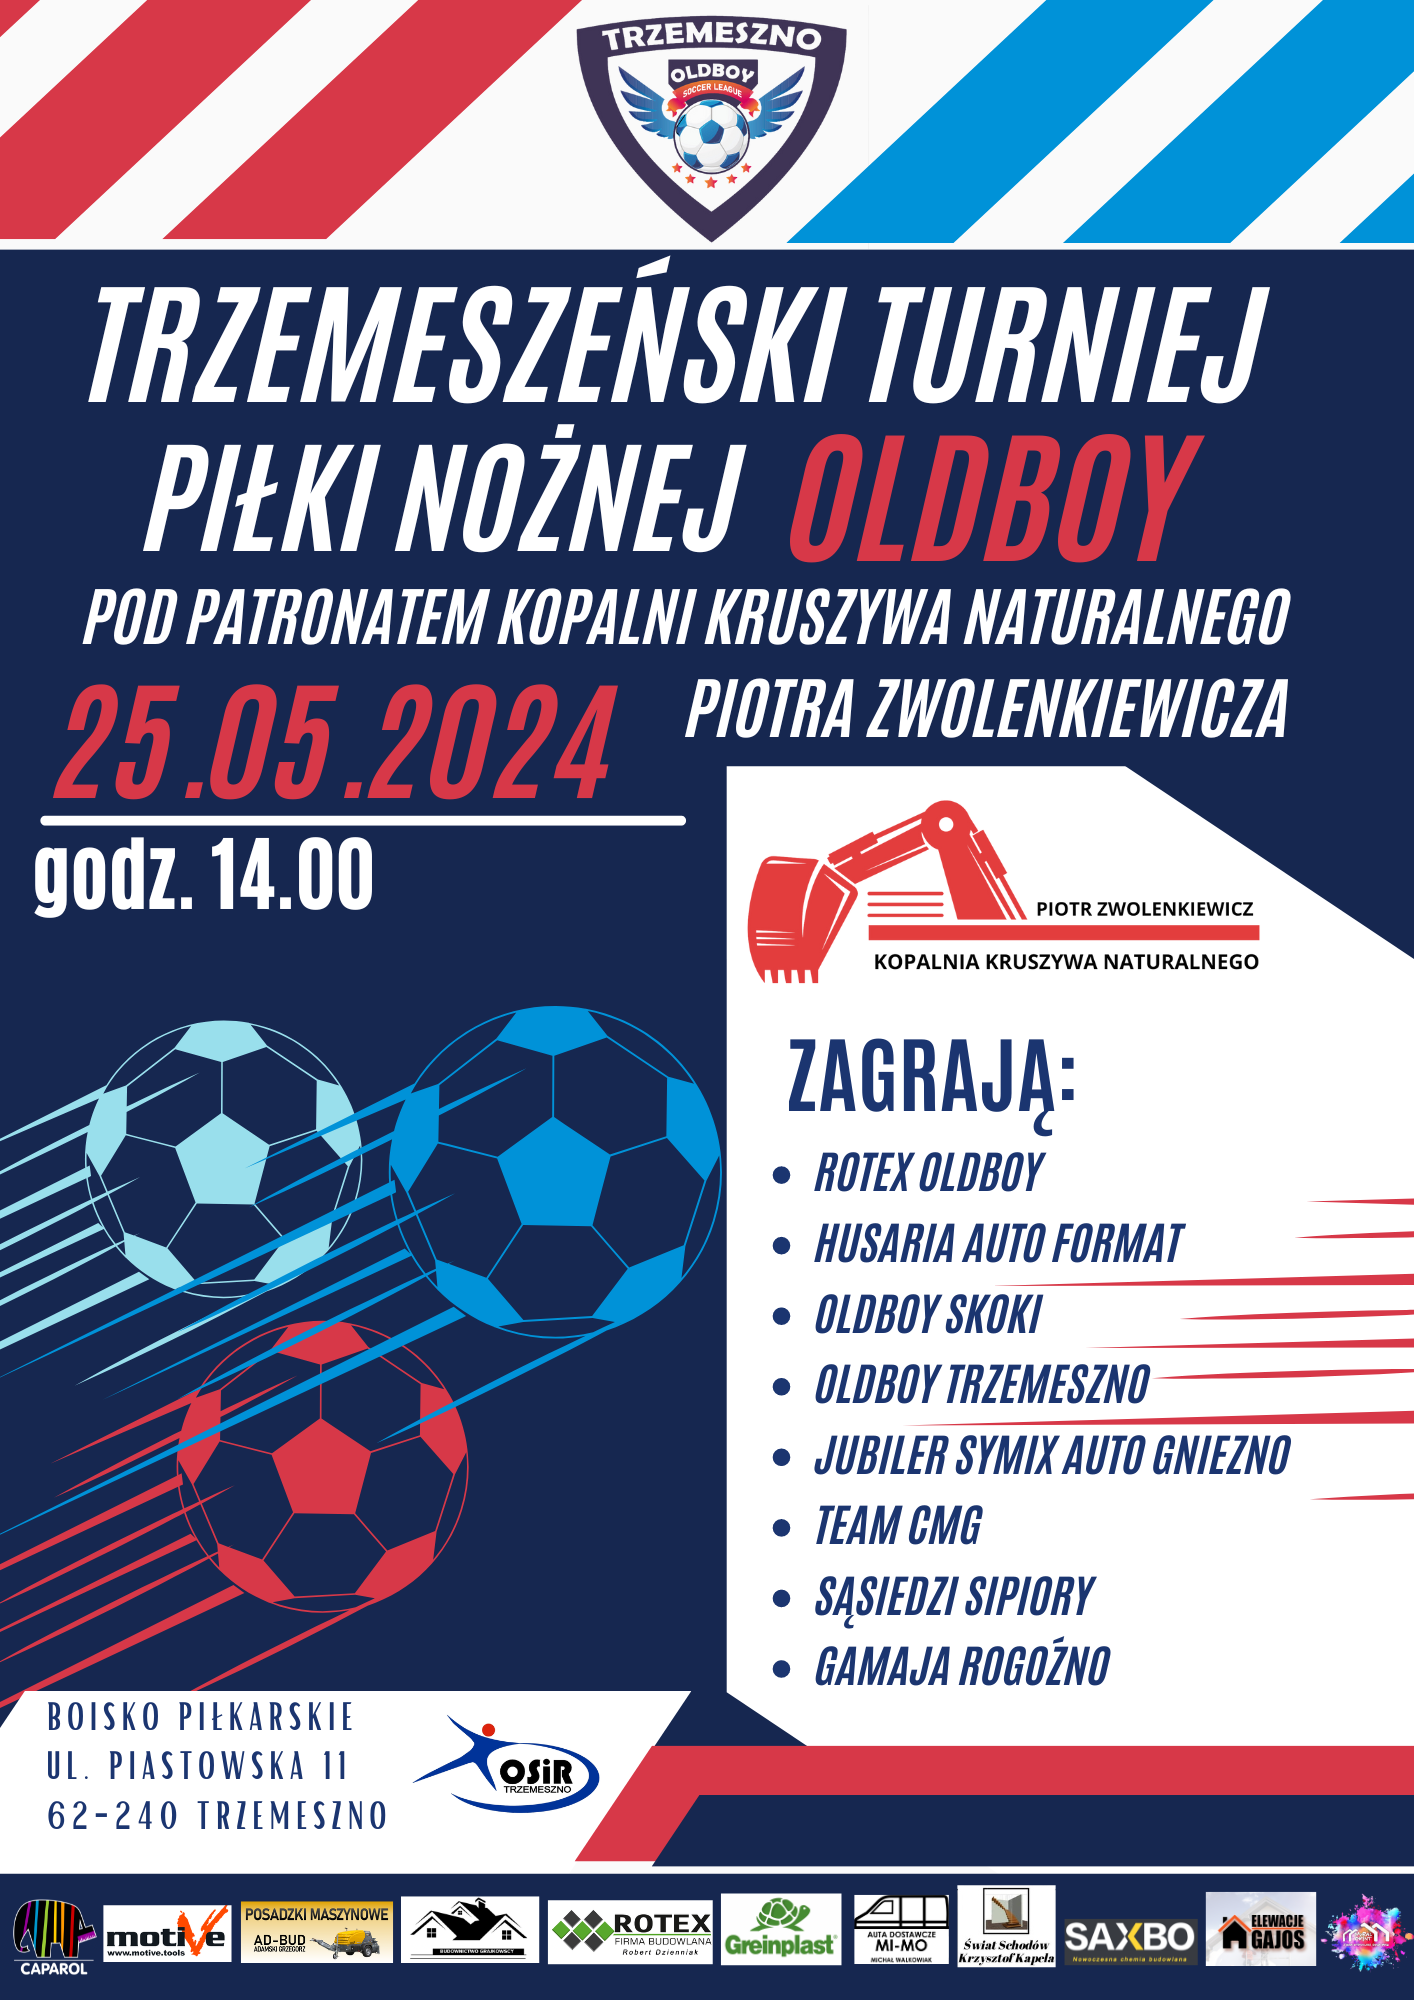 Trzemeszeński turniej piłki nożnej OLDBOY @ PIASTOWSKA11